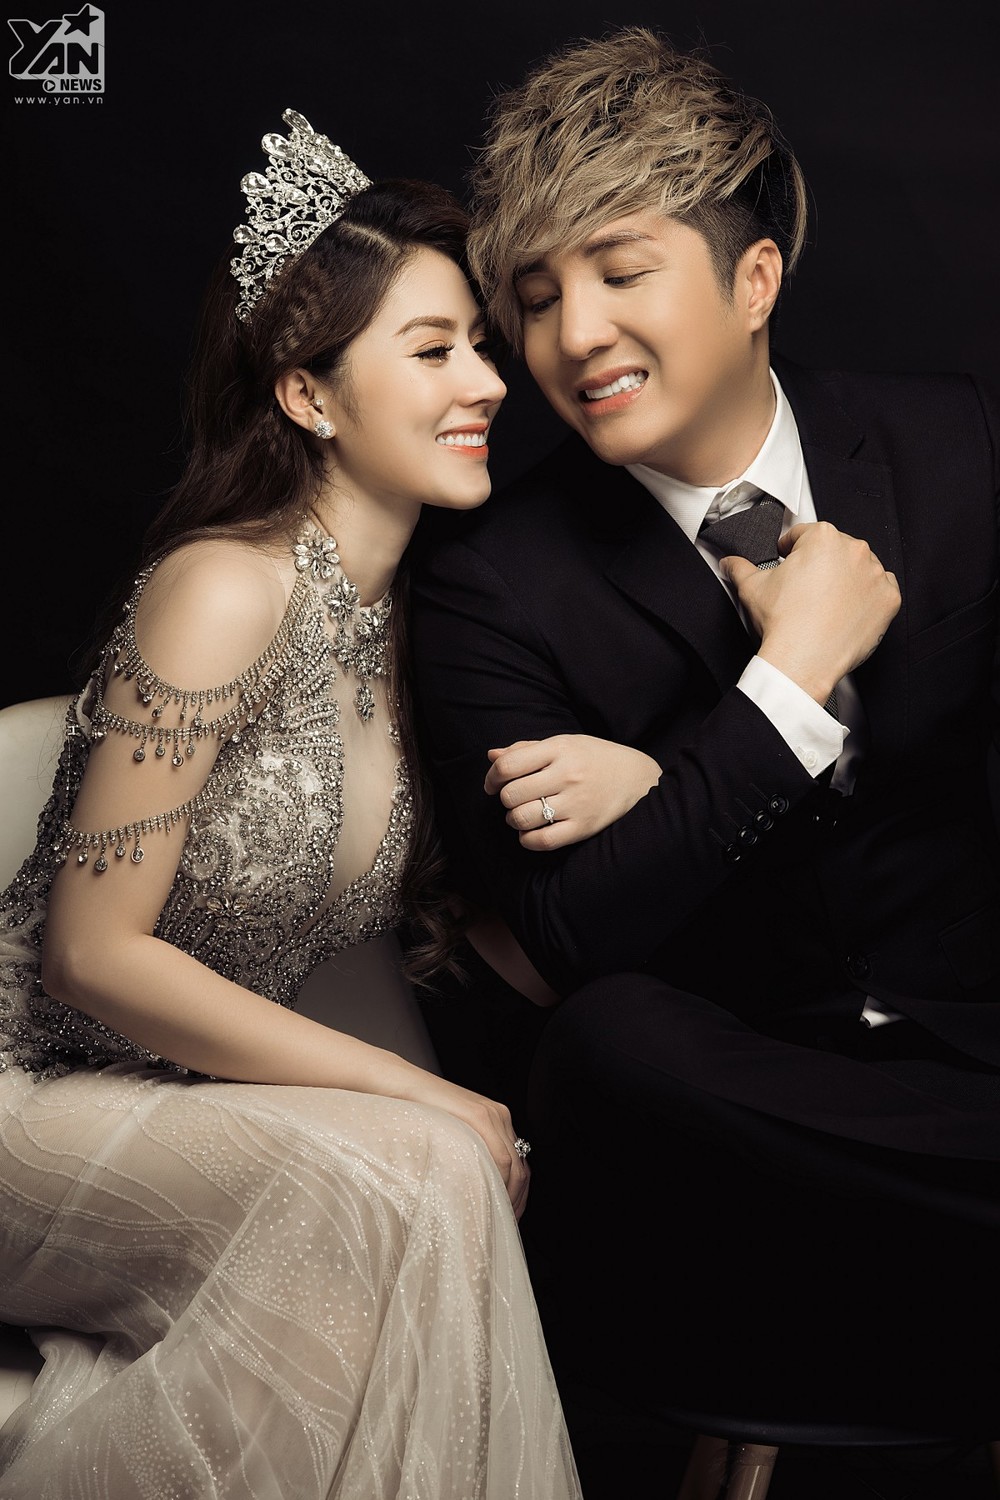 Thiệp cưới độc đáo, sang trọng của Lâm Chấn Khang và vợ Kim Jun See